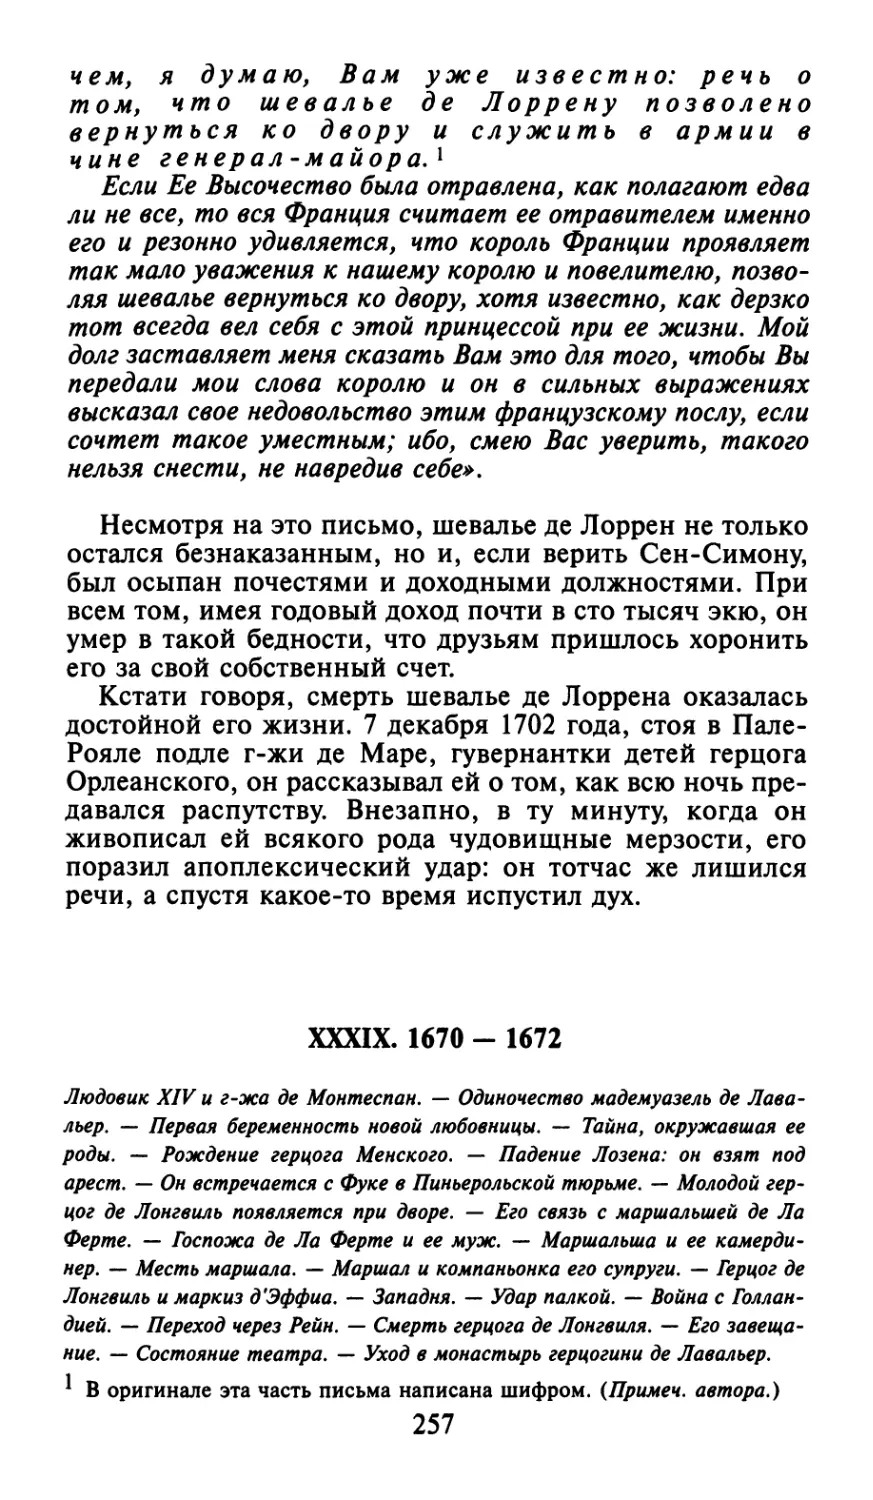 XXXIX. 1670 - 1672